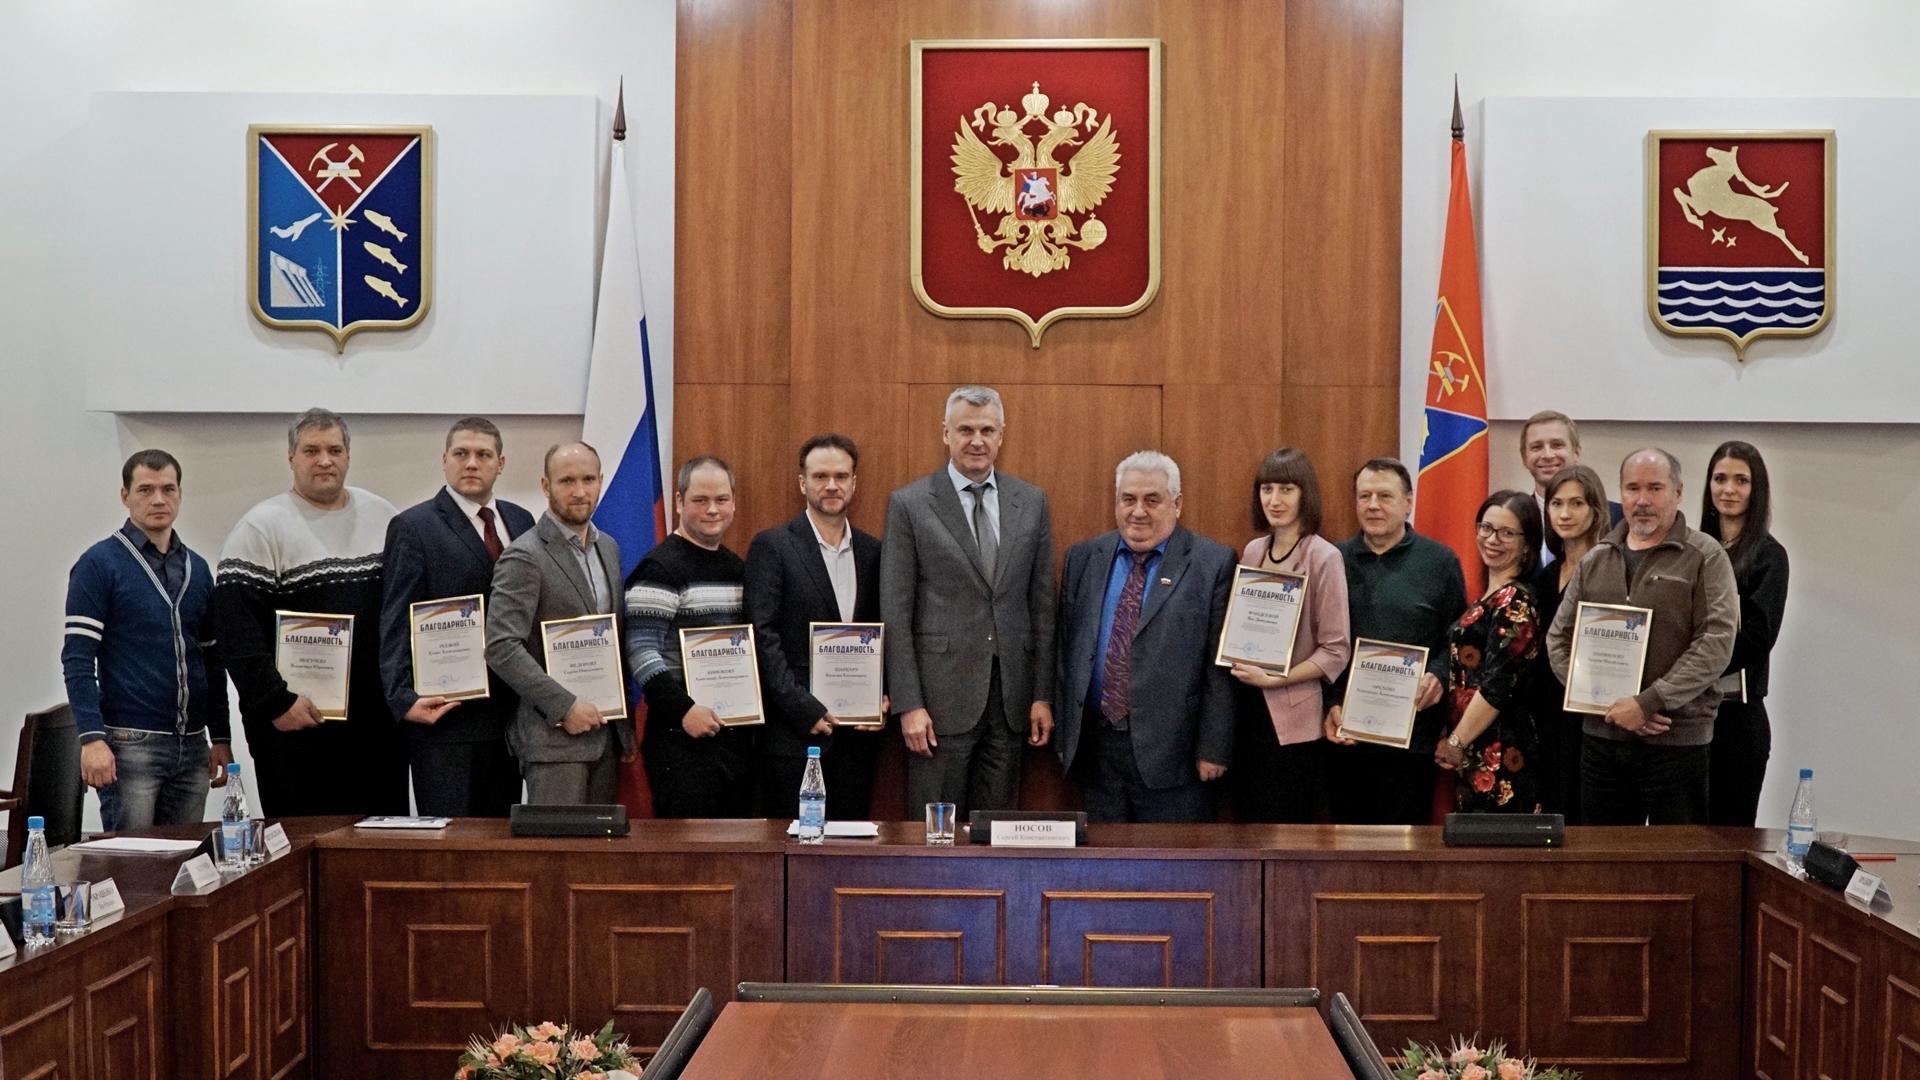 Глава региона вручил поздравительные адреса колымским организациям — победителям Президентских грантов 2018